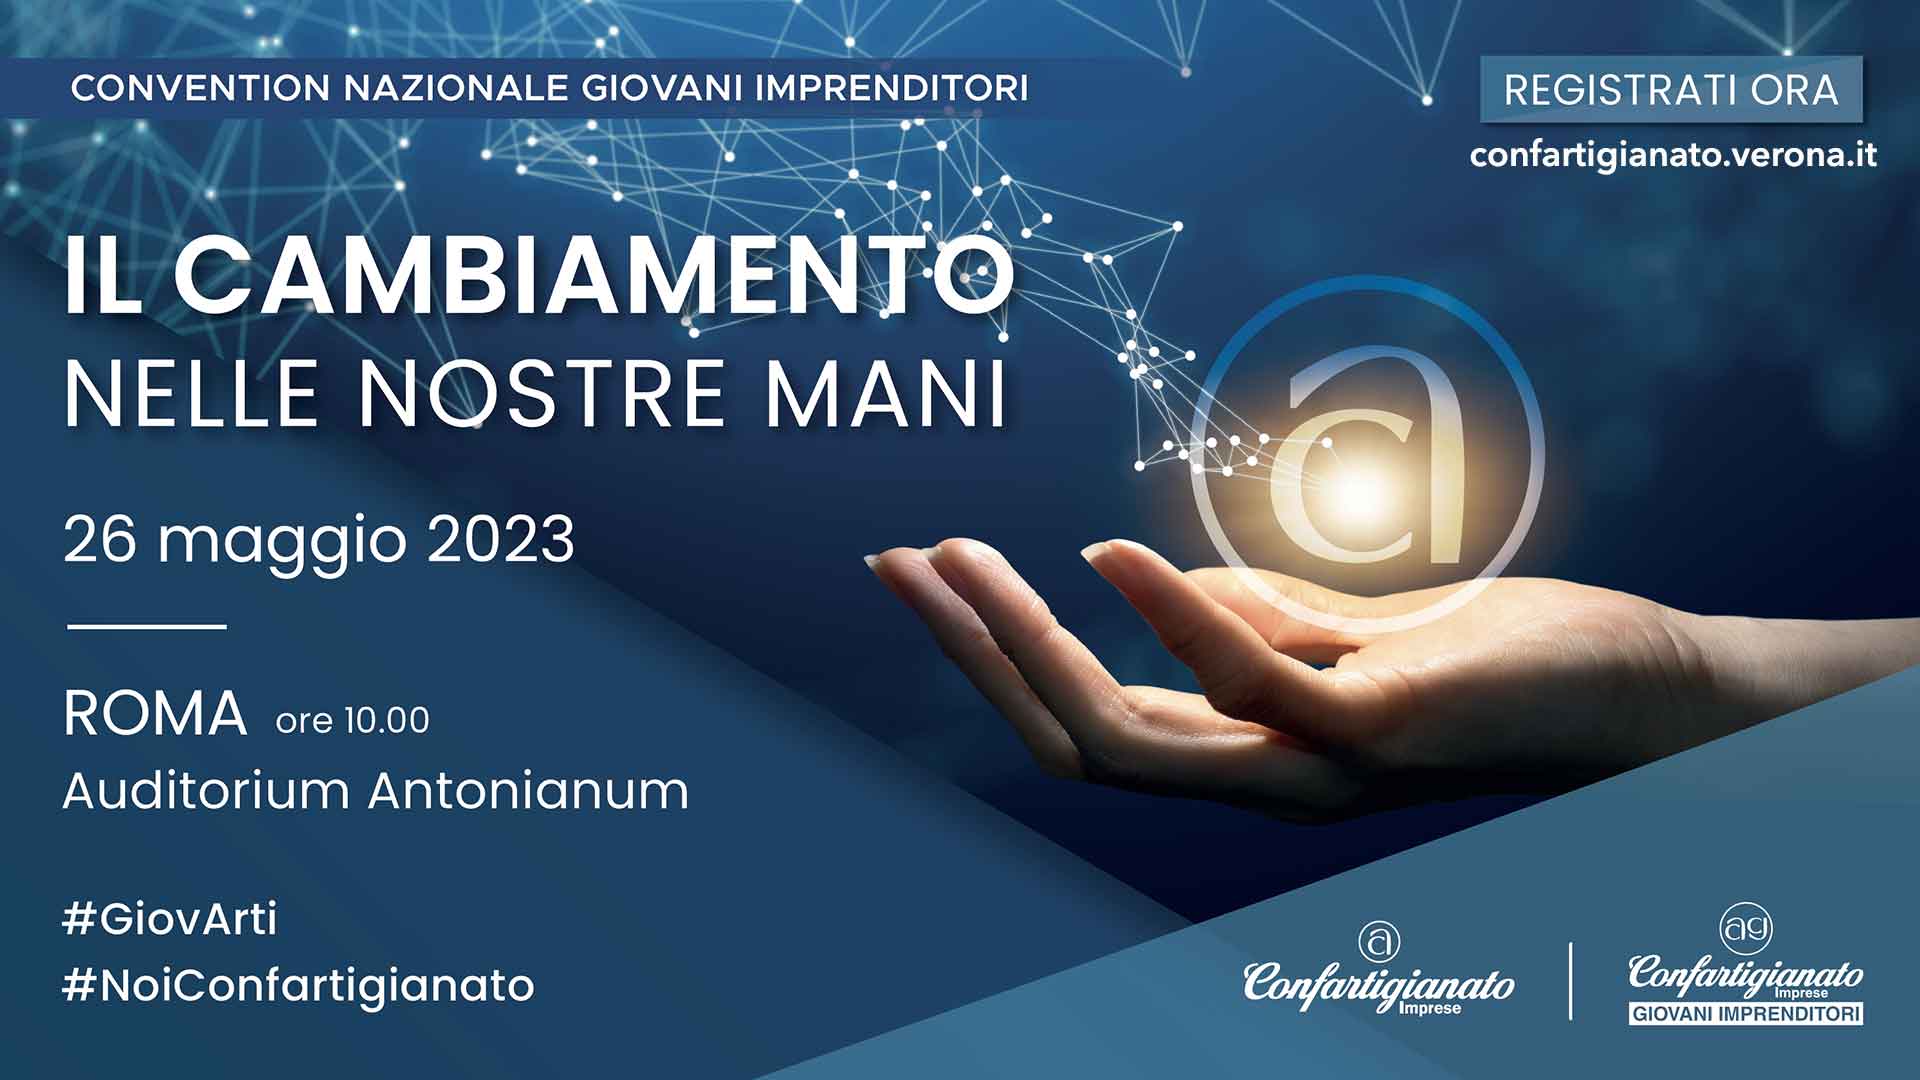 GIOVANI IMPRENDITORI – “Il cambiamento nelle nostre mani”: Convention nazionale il 26 maggio a Roma. Iscriviti per partecipare con i Giovani di Verona